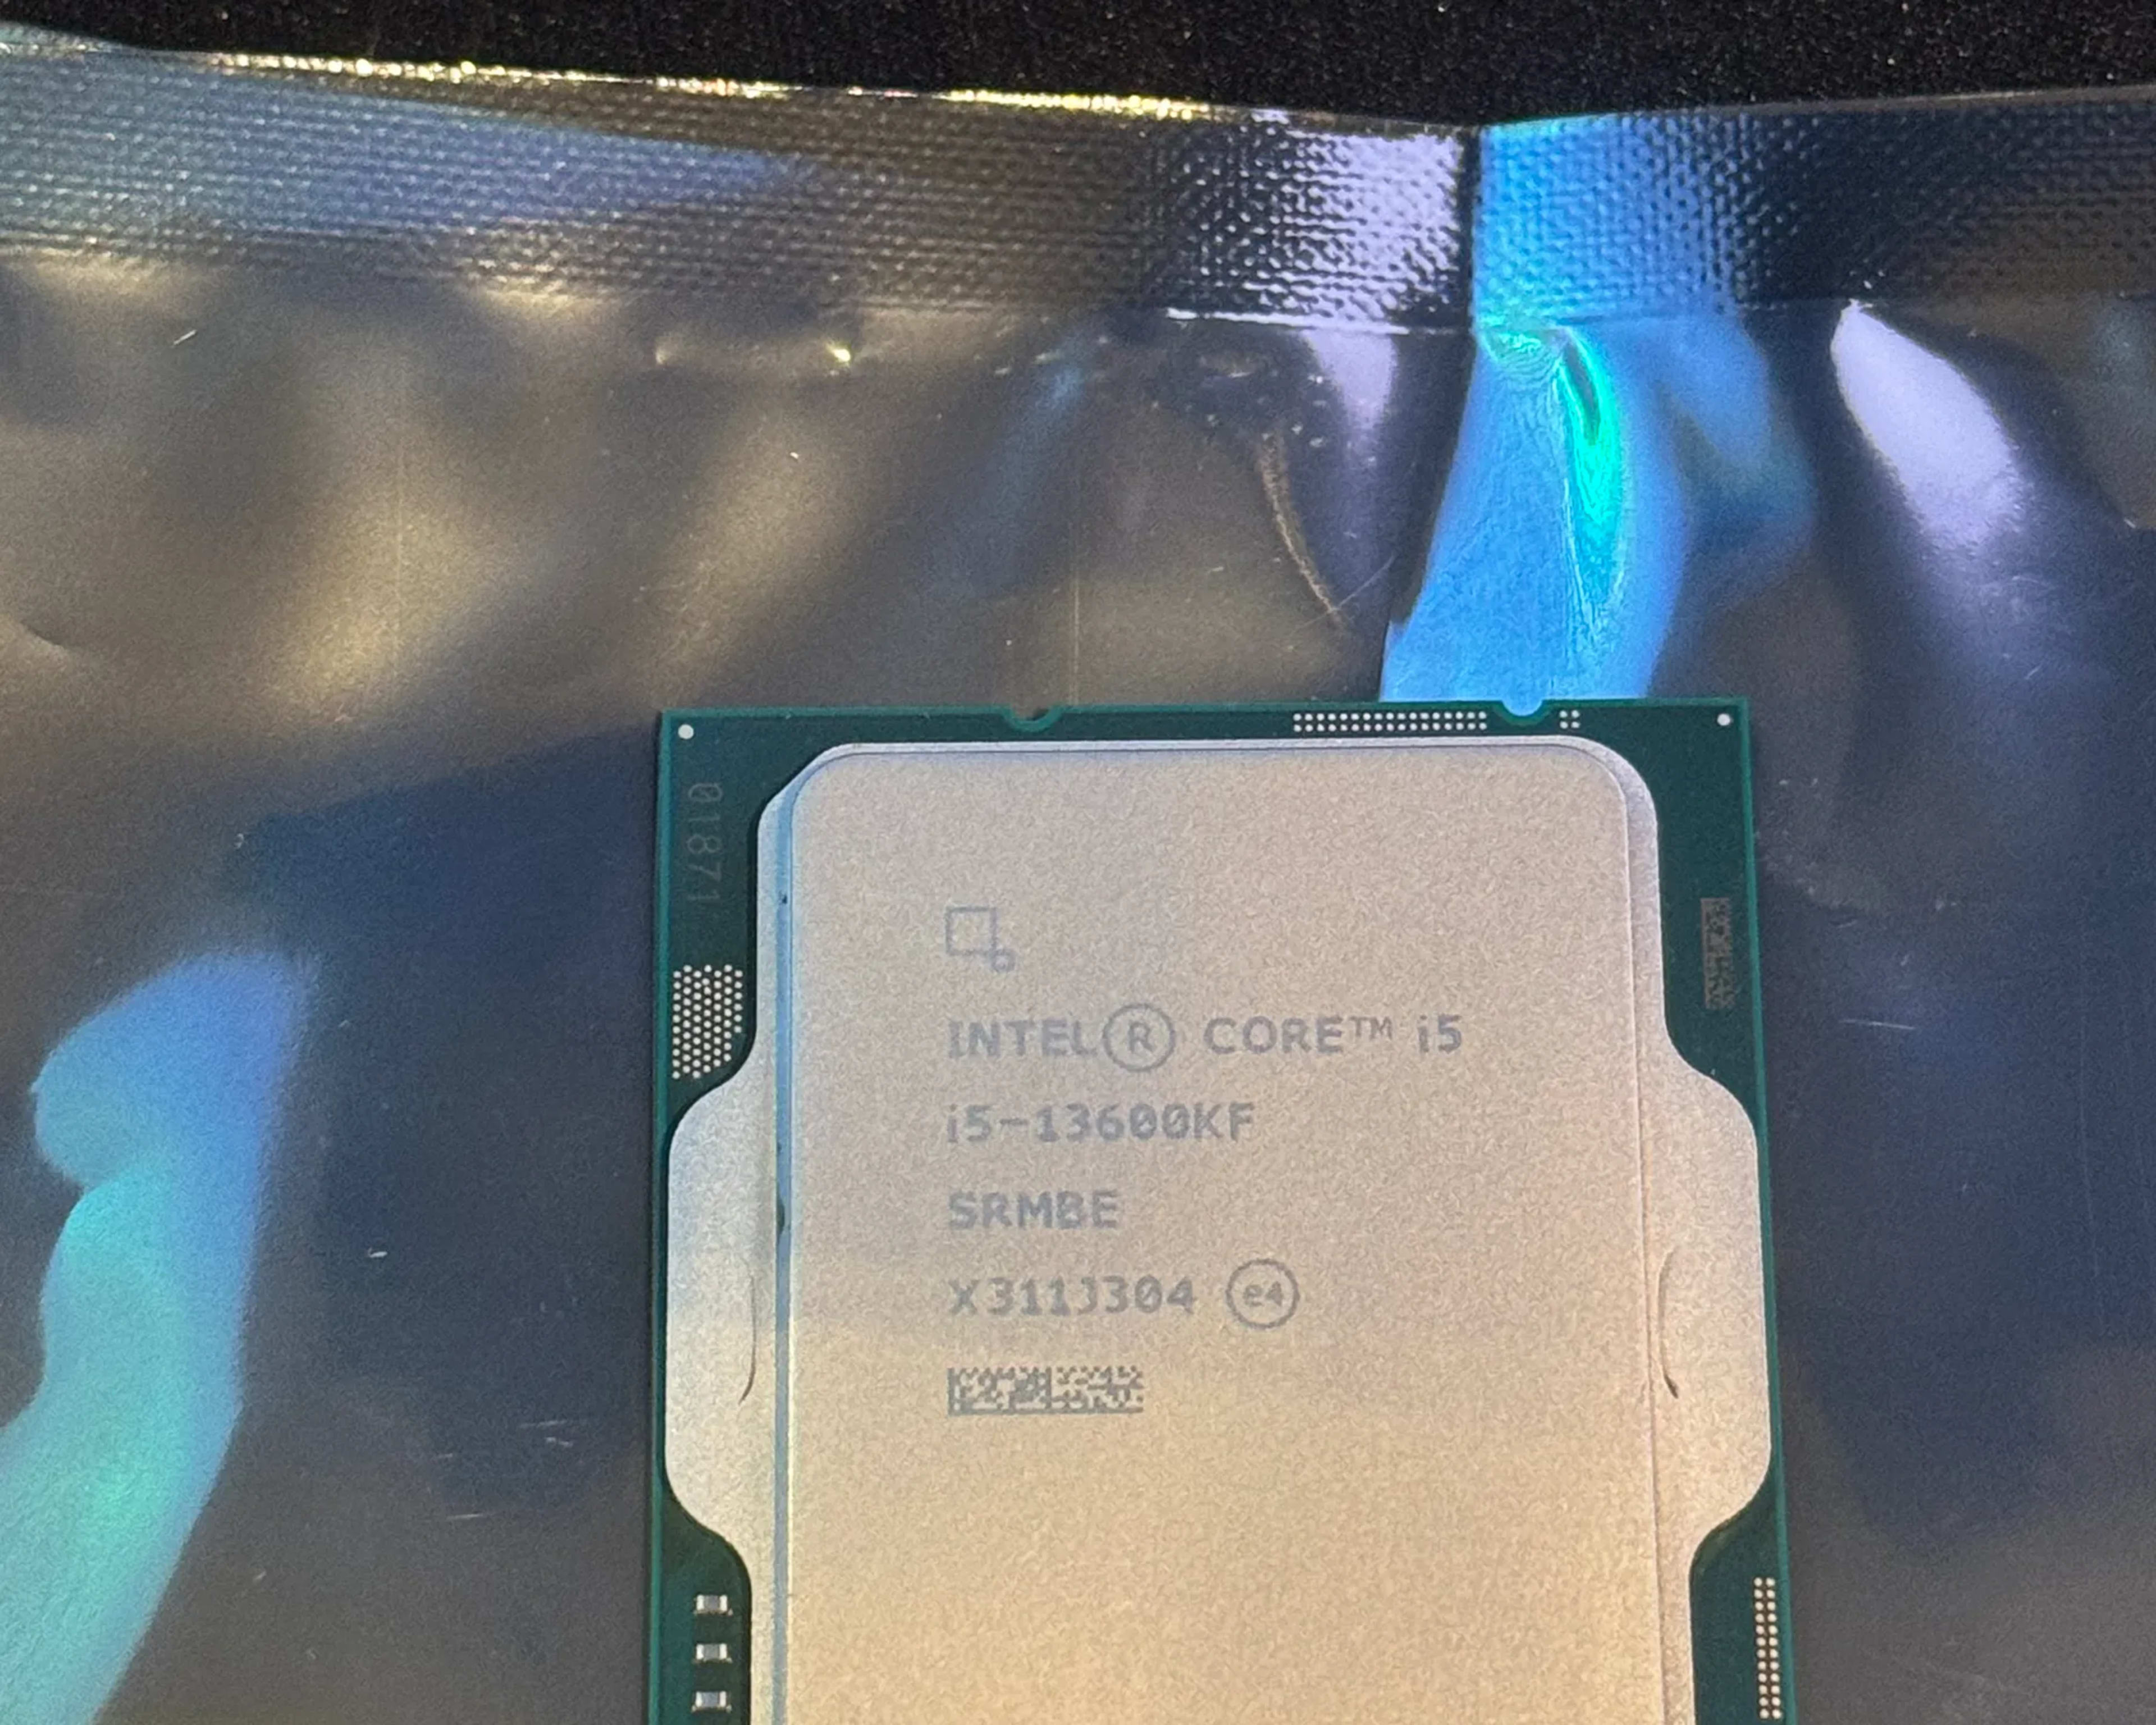 Intel Core i5-13600KFDesktop Processor 14 cores (6 P-cores + 8 E-cores) - Unlocked